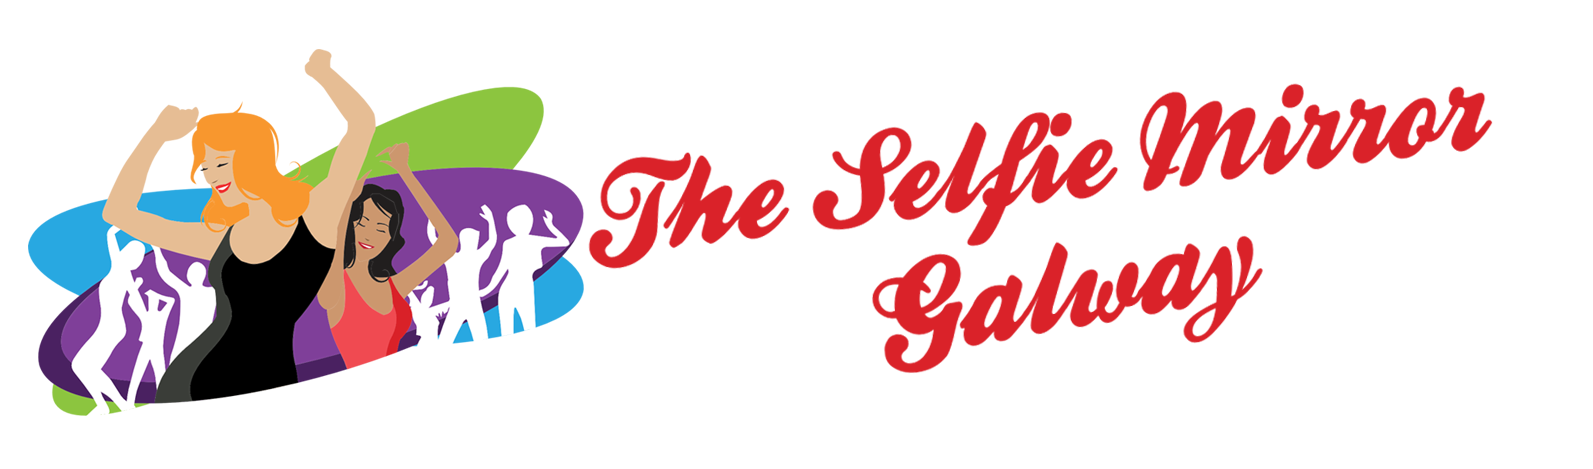 The Selfie Mirror Galway